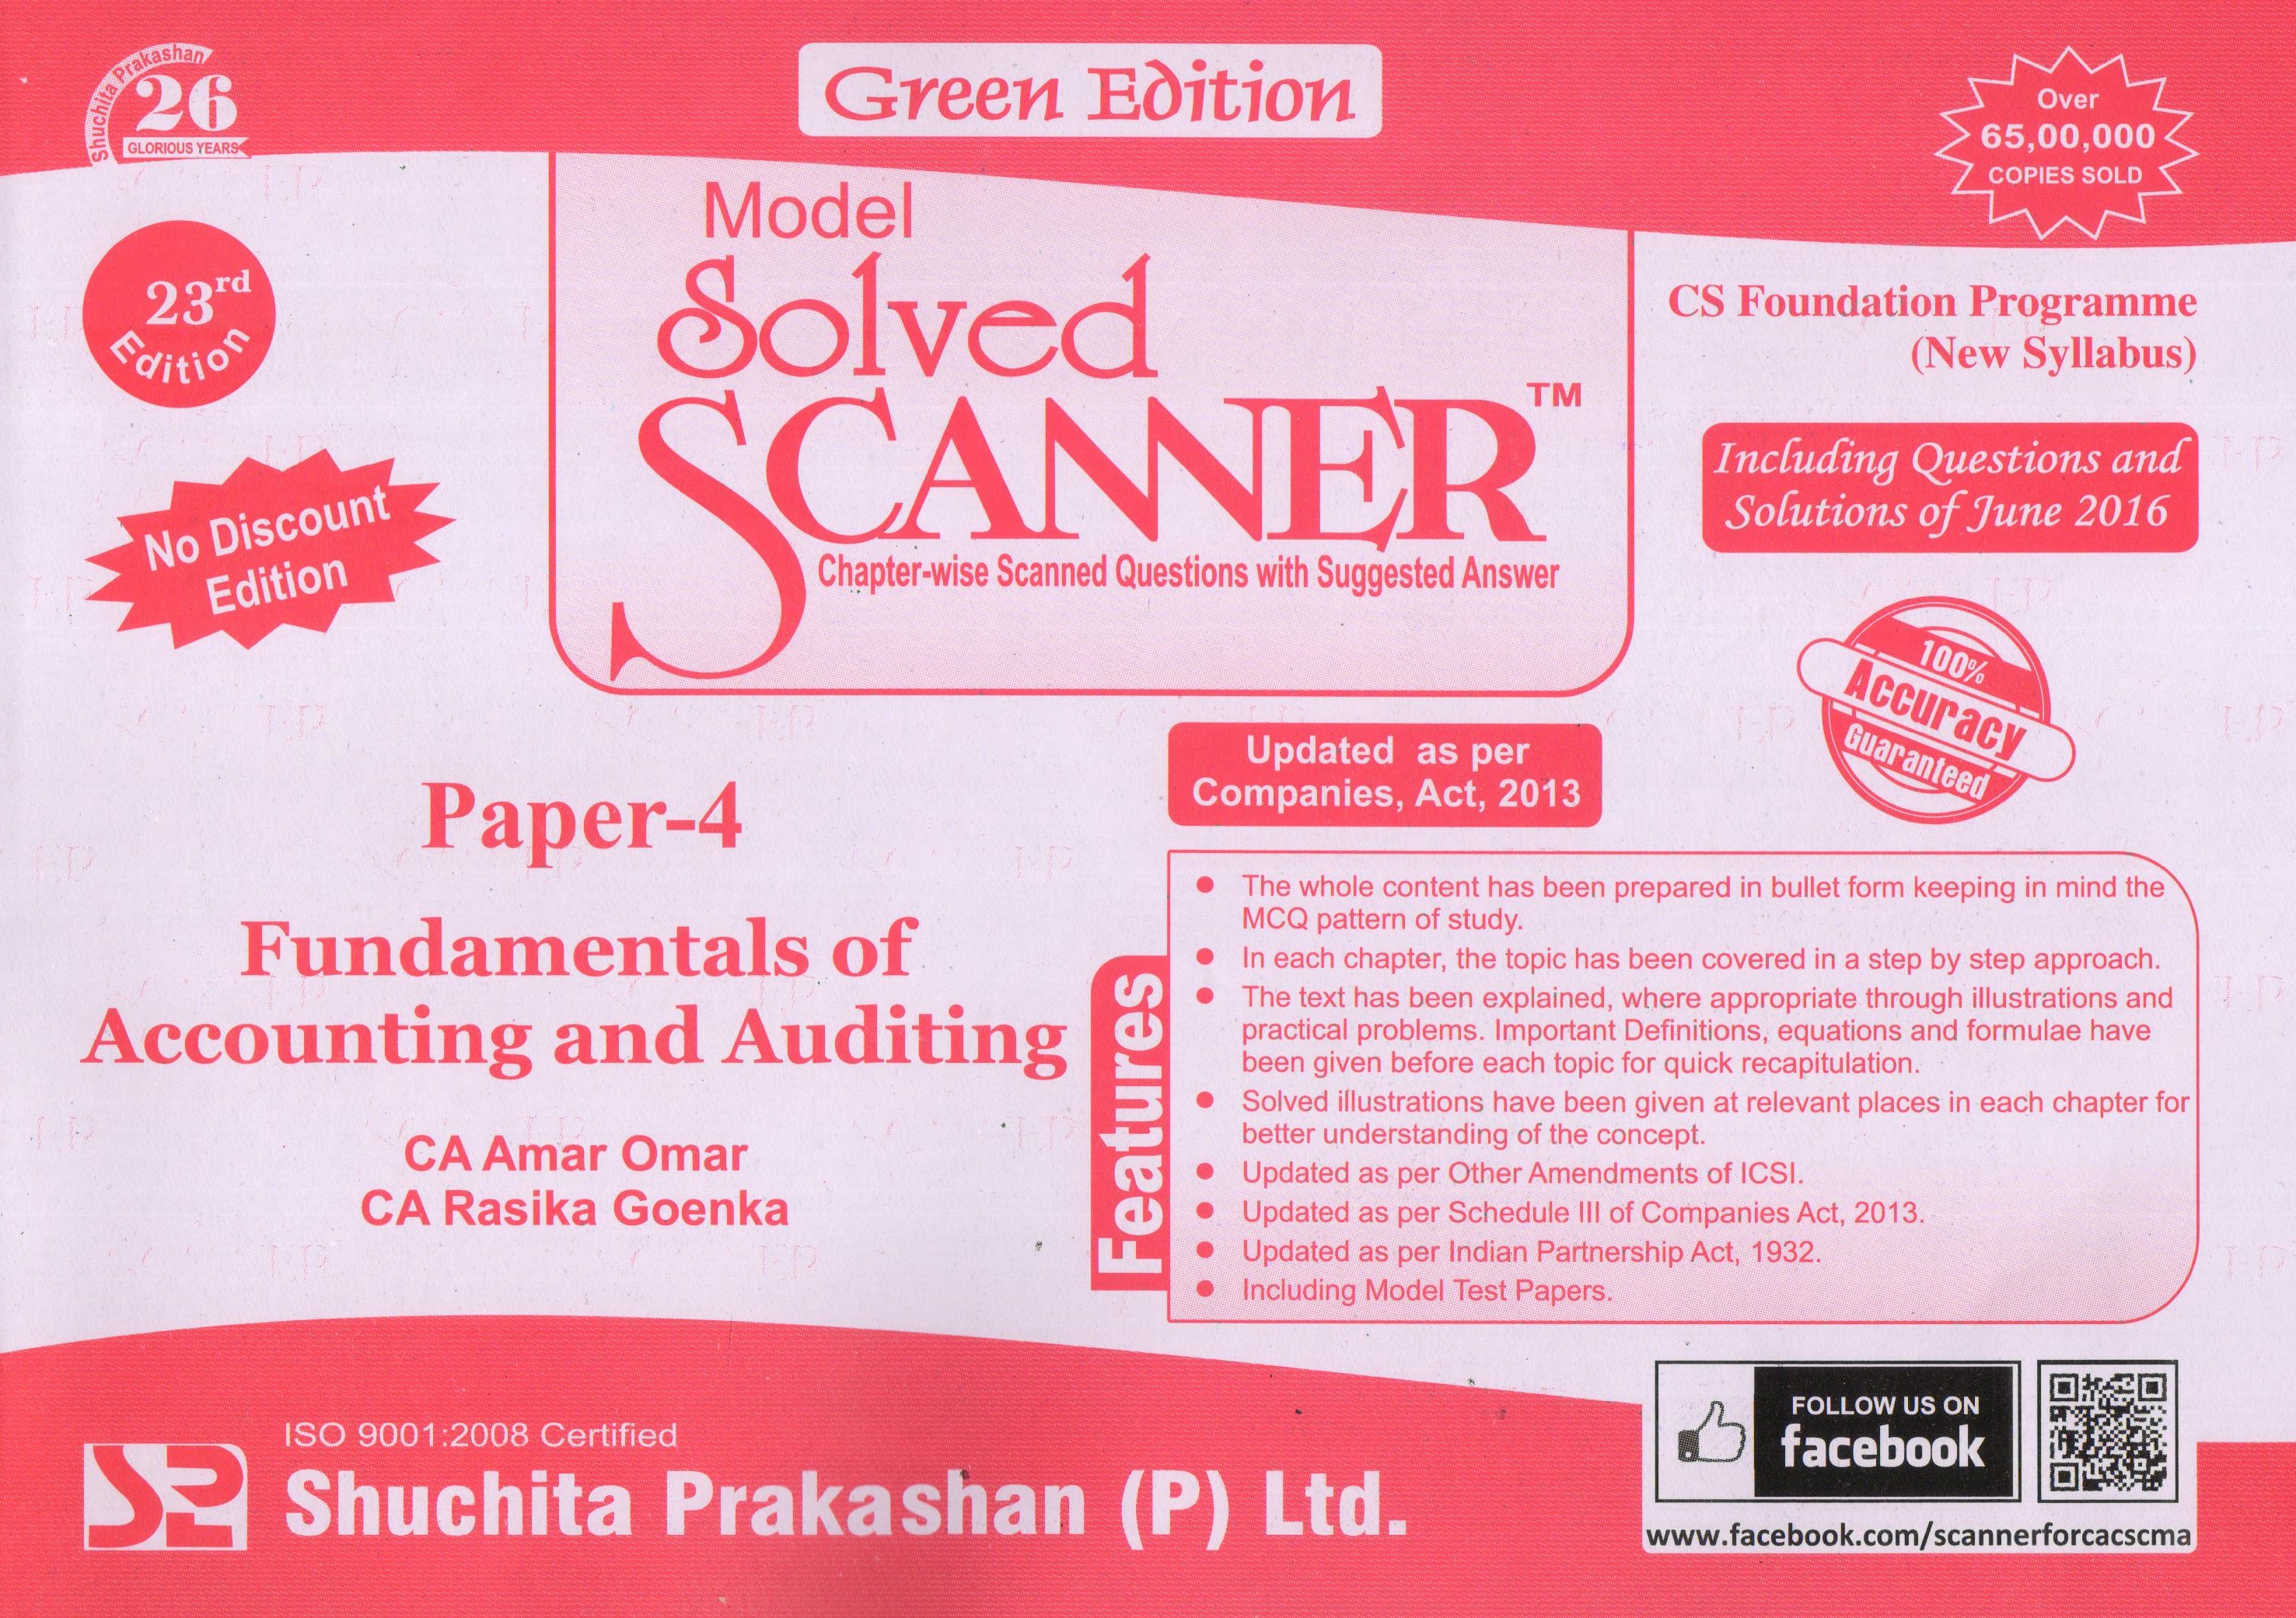 Shuchita Prakashan Solved Scanner For Cs Executive Pdf Download